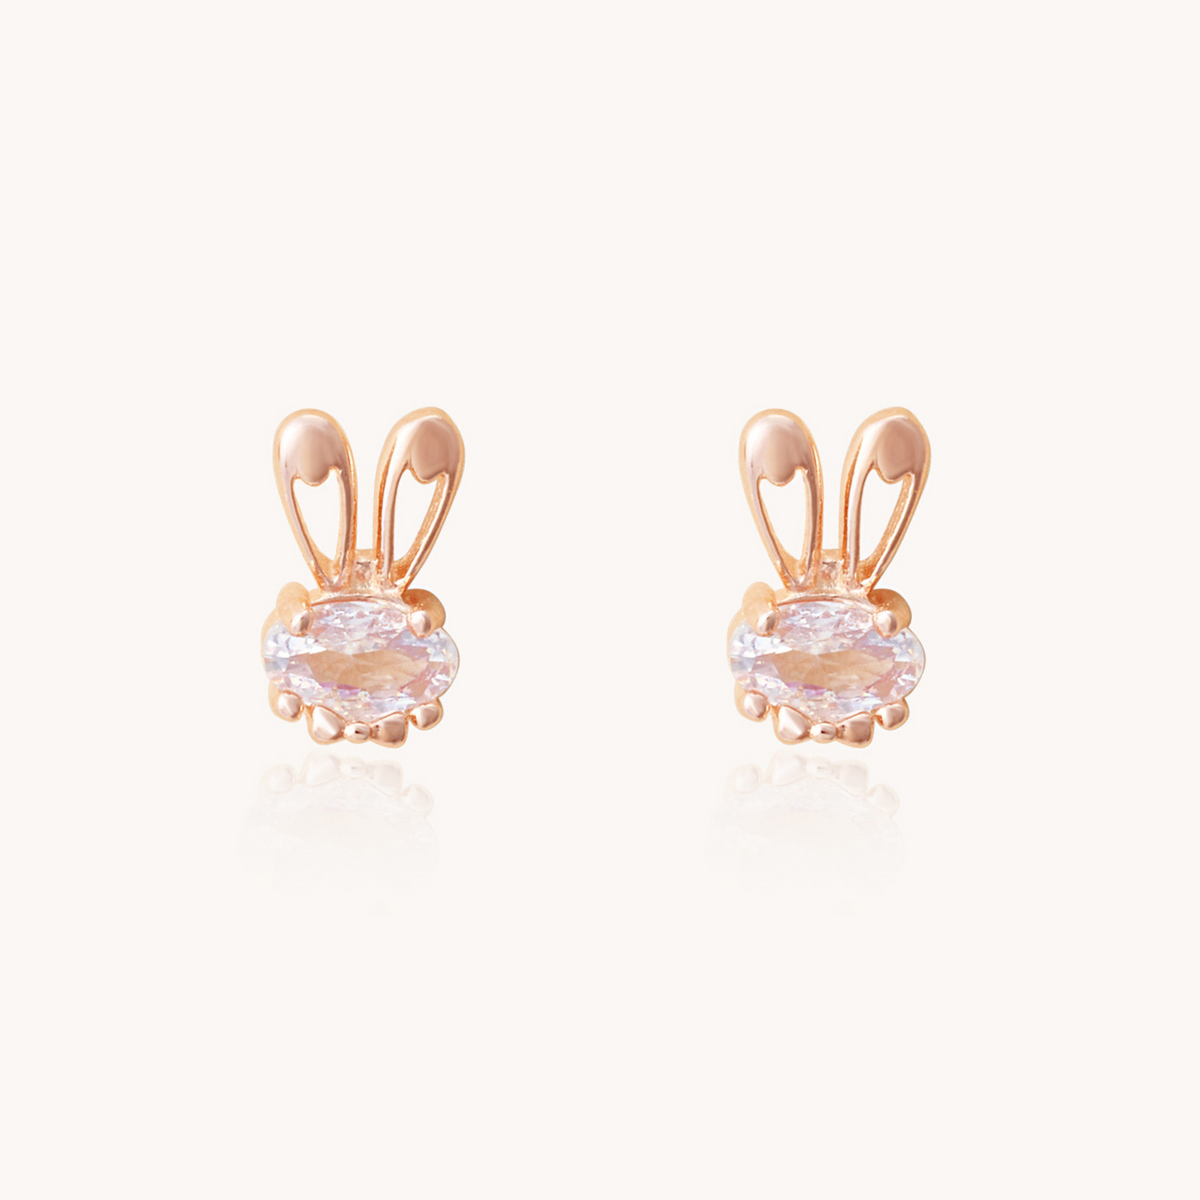 Bunny Stud earrings